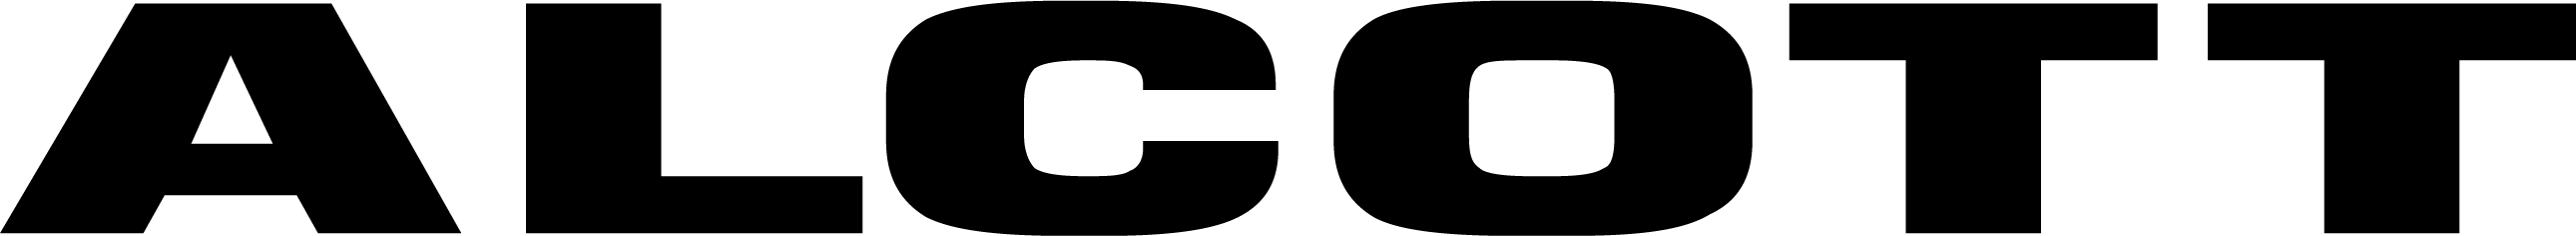 Brand logo for Alcott